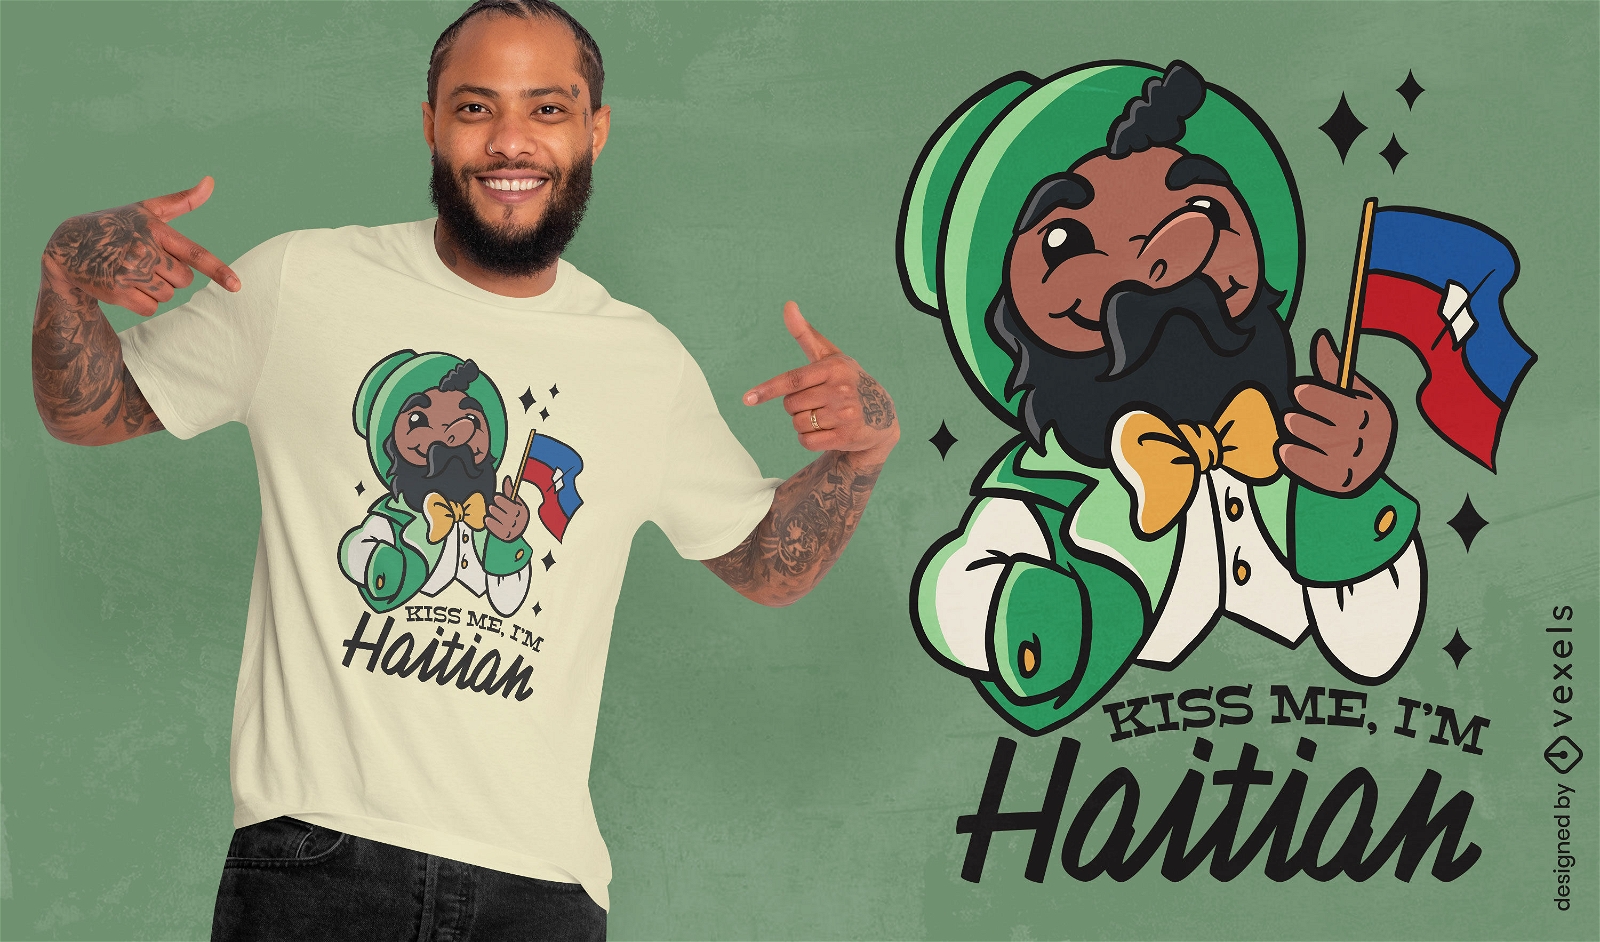 Beije-me, sou design de camiseta haitiana